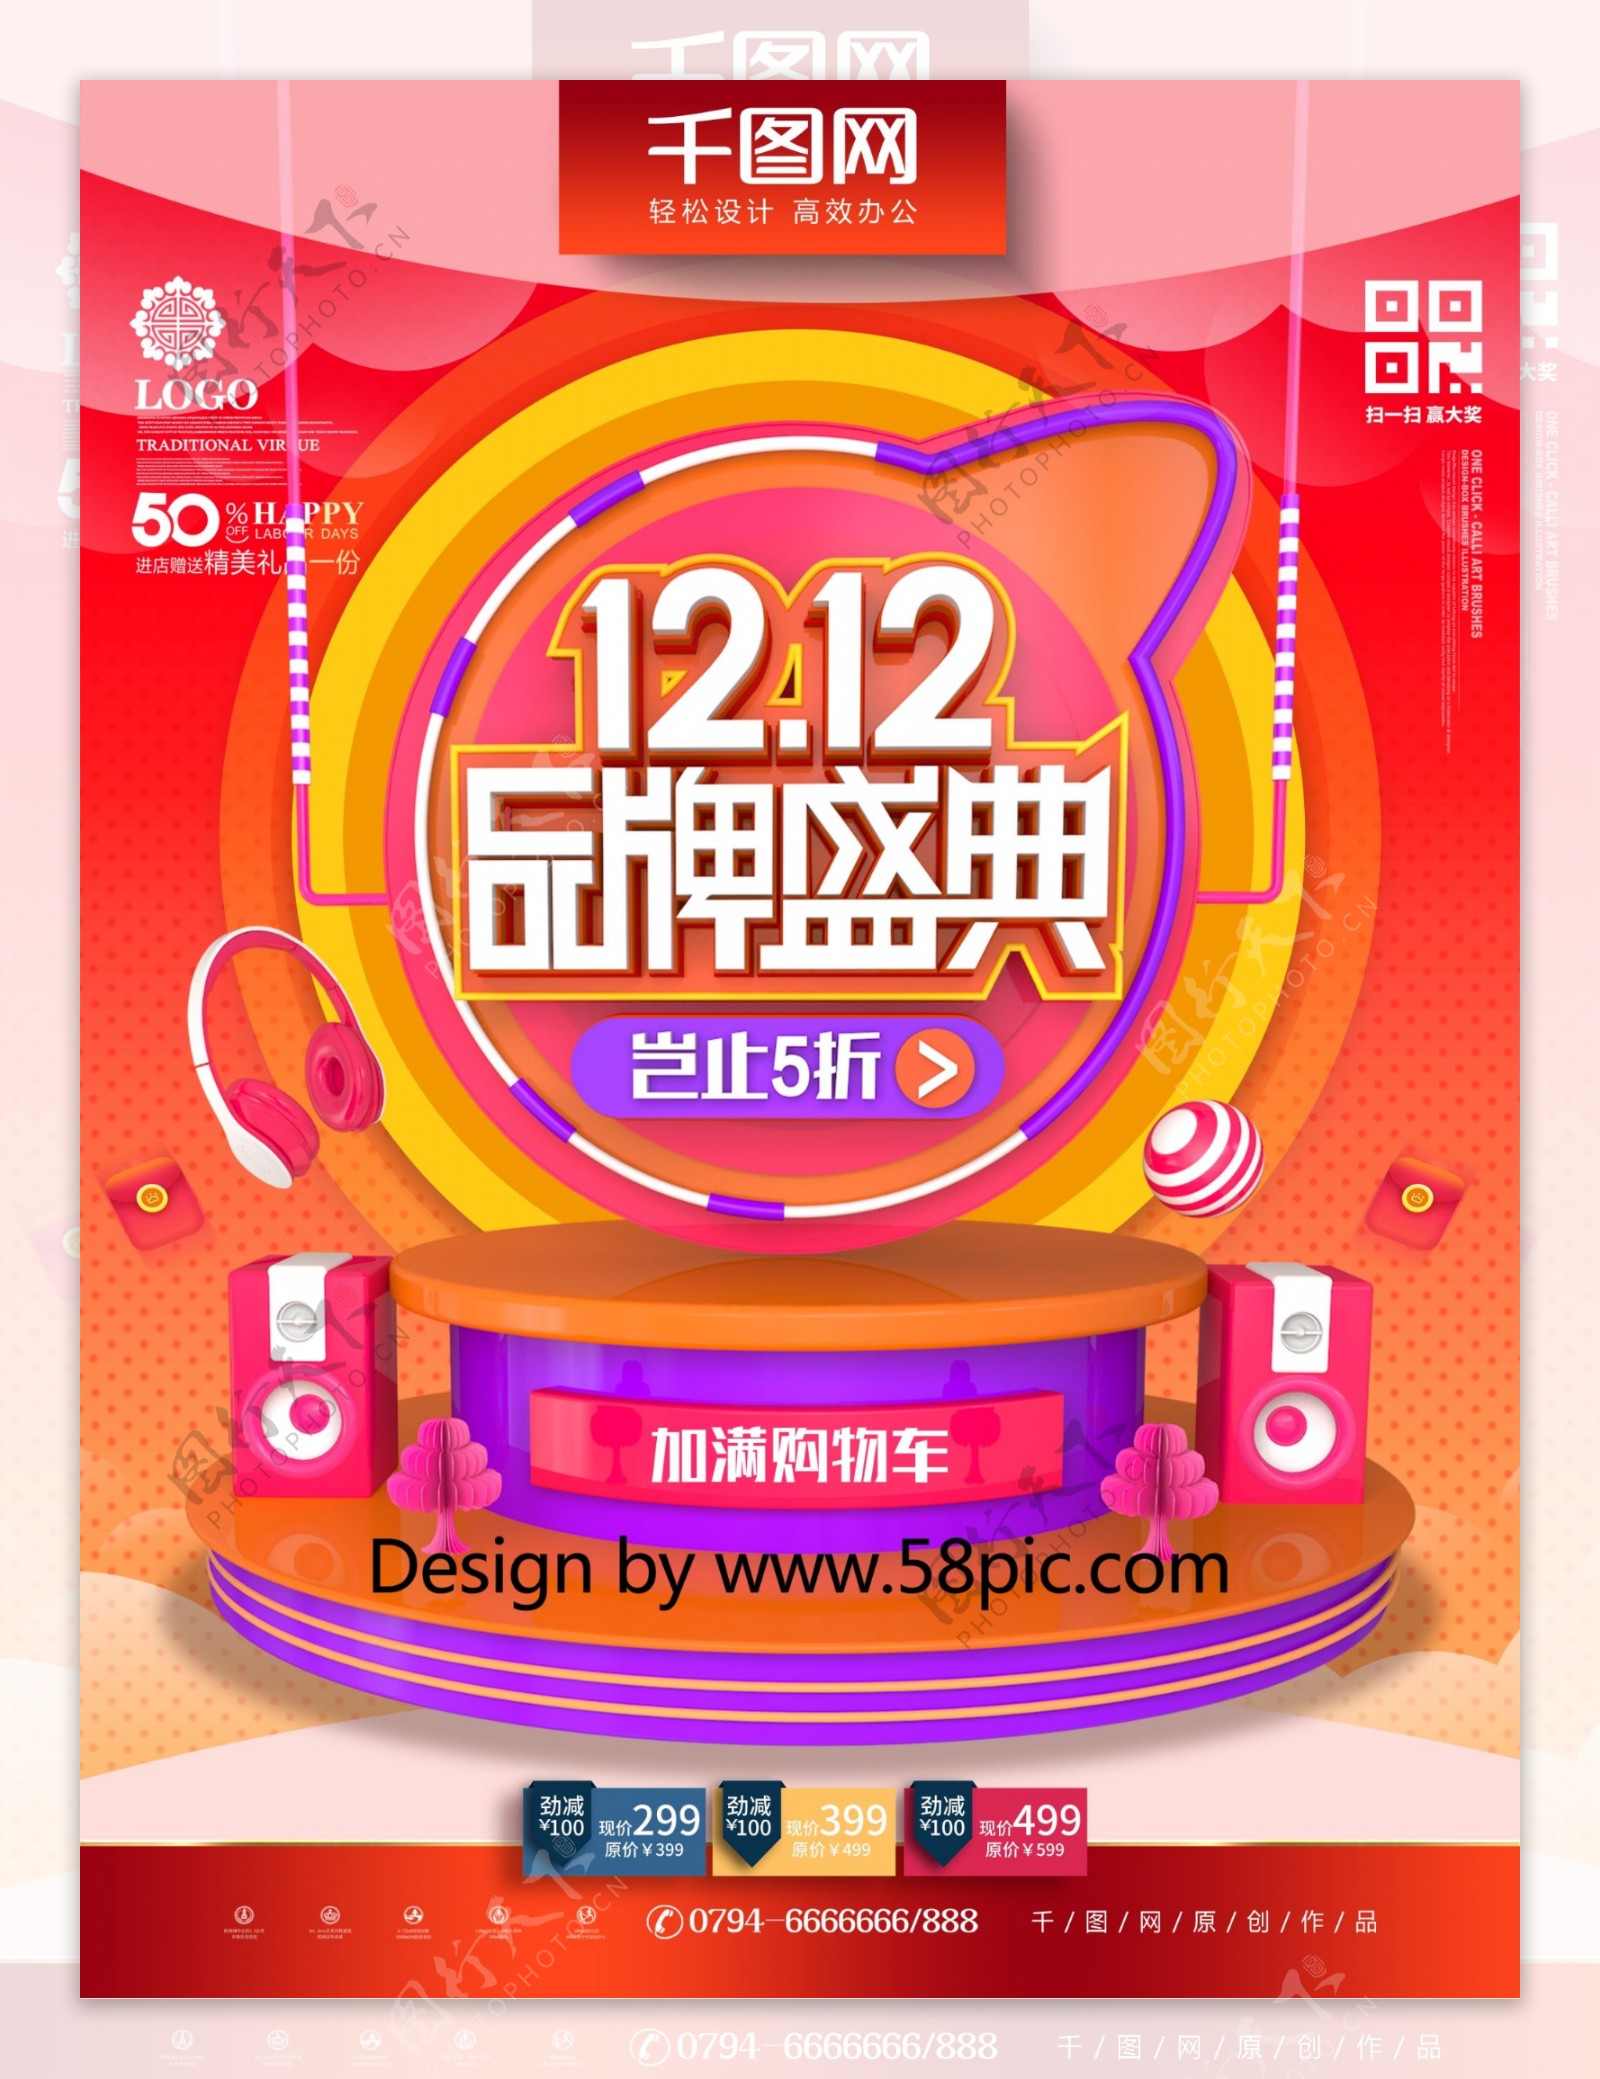 C4D创意双12品牌盛典双12促销海报